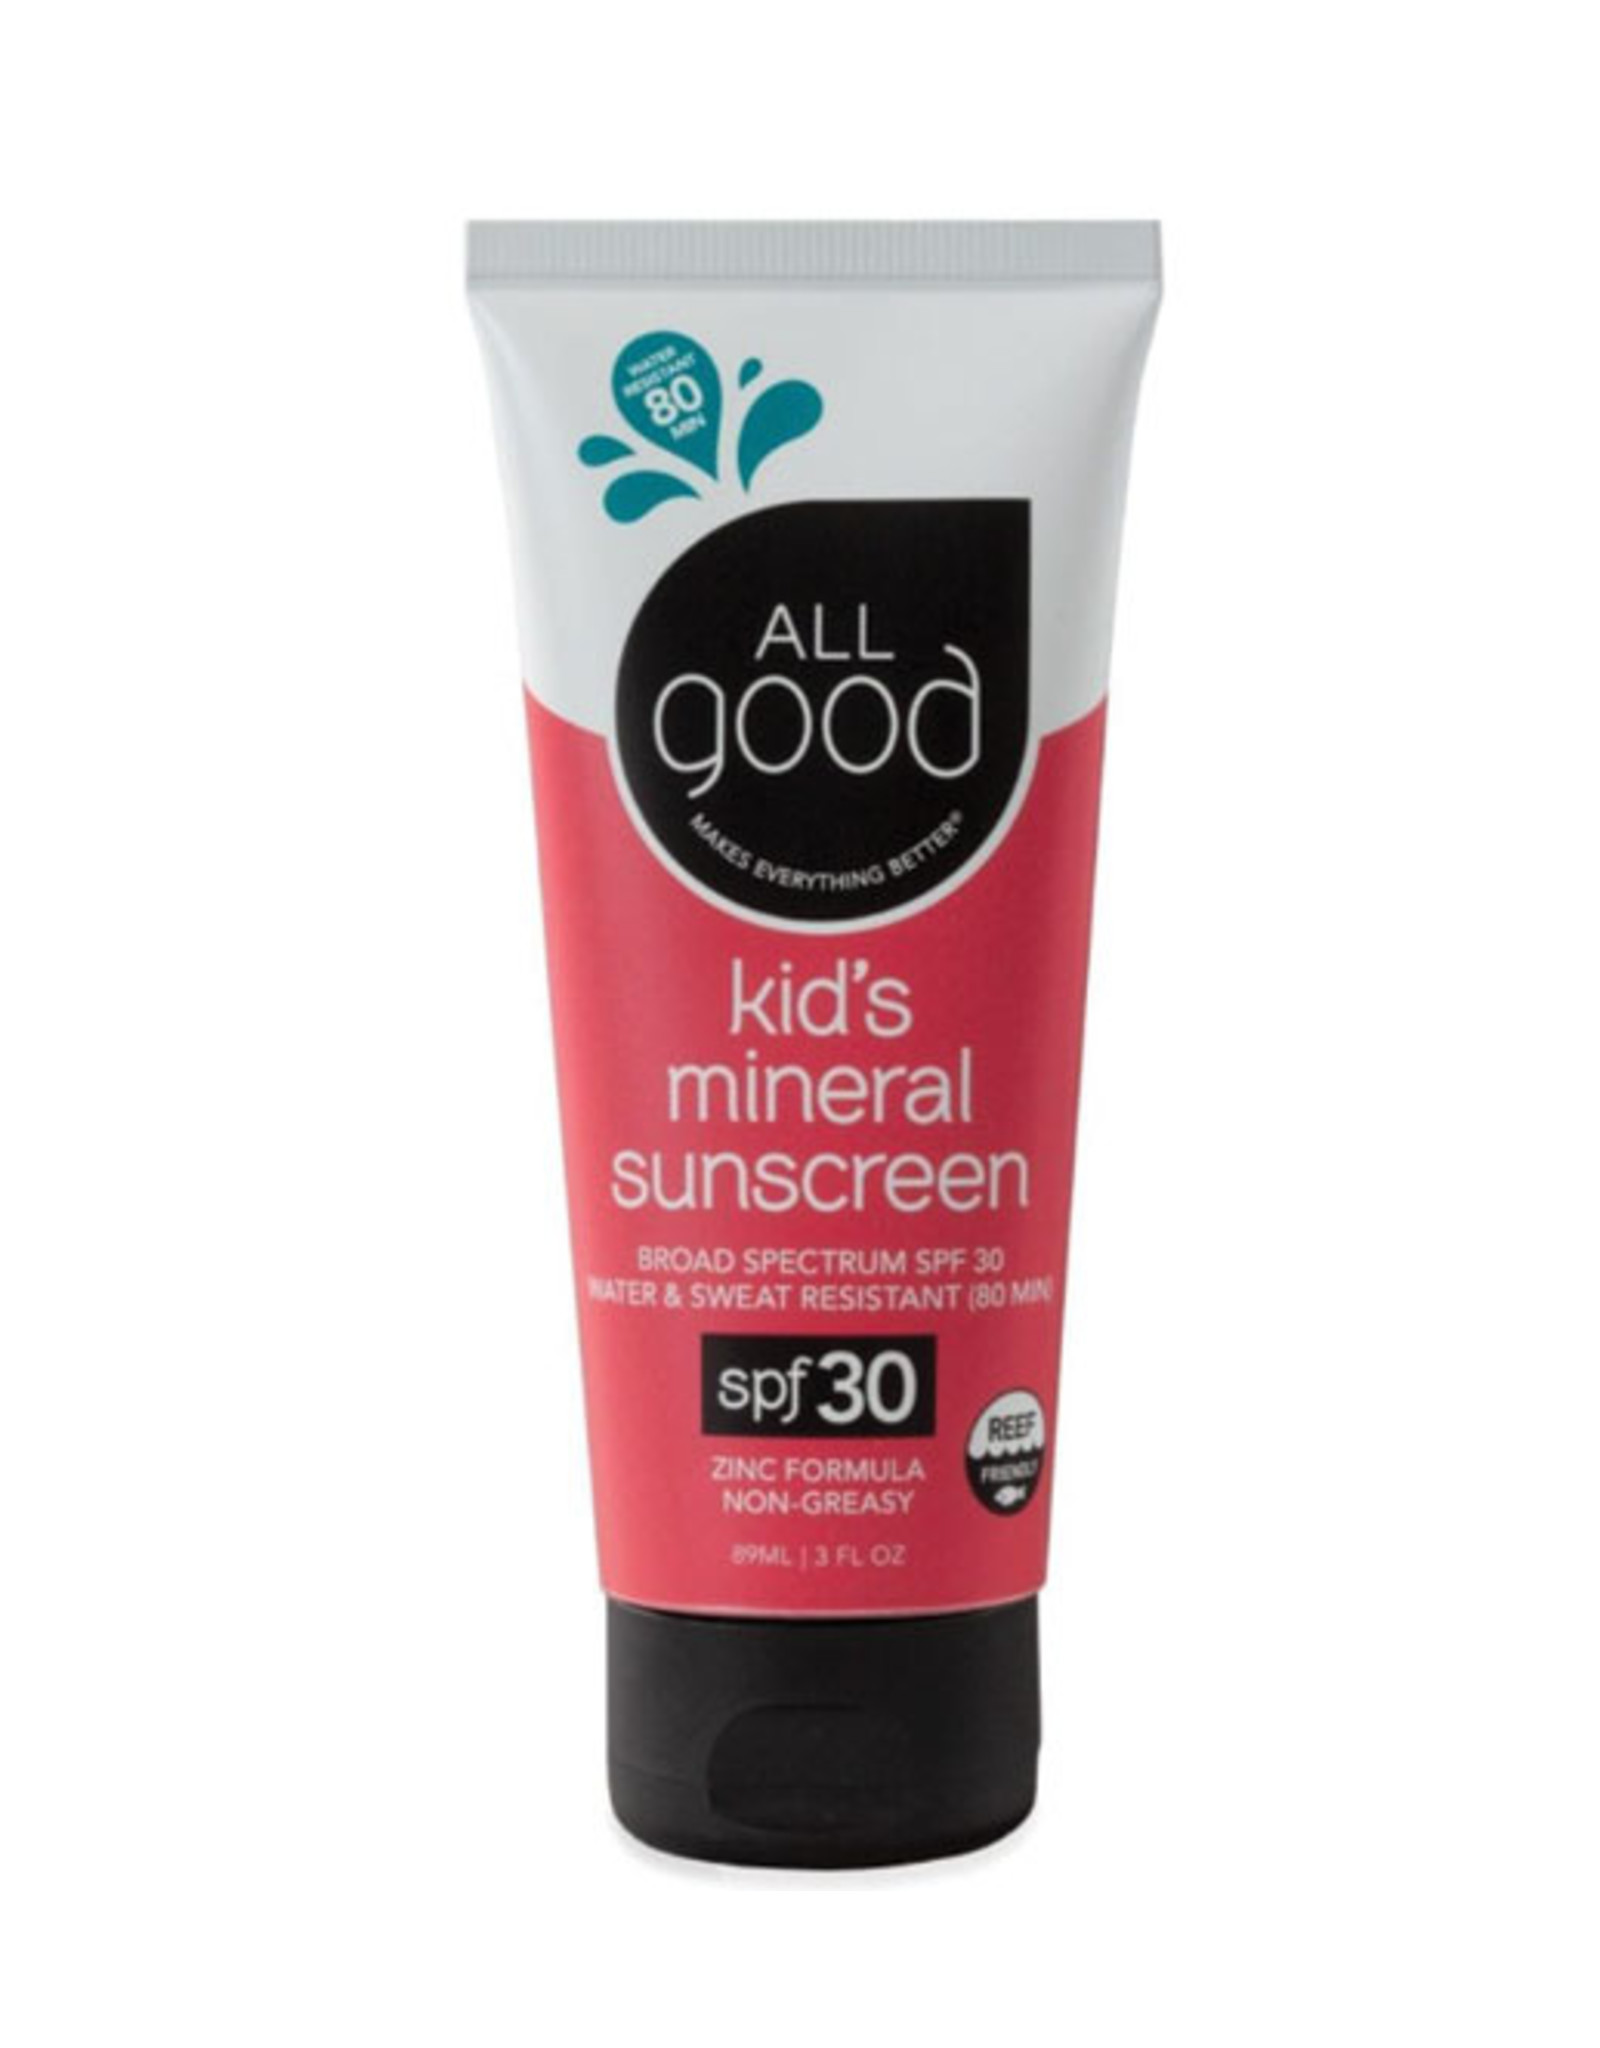 All Good All Good Kids Sunscreen Lotion SPF 30 3oz Tube